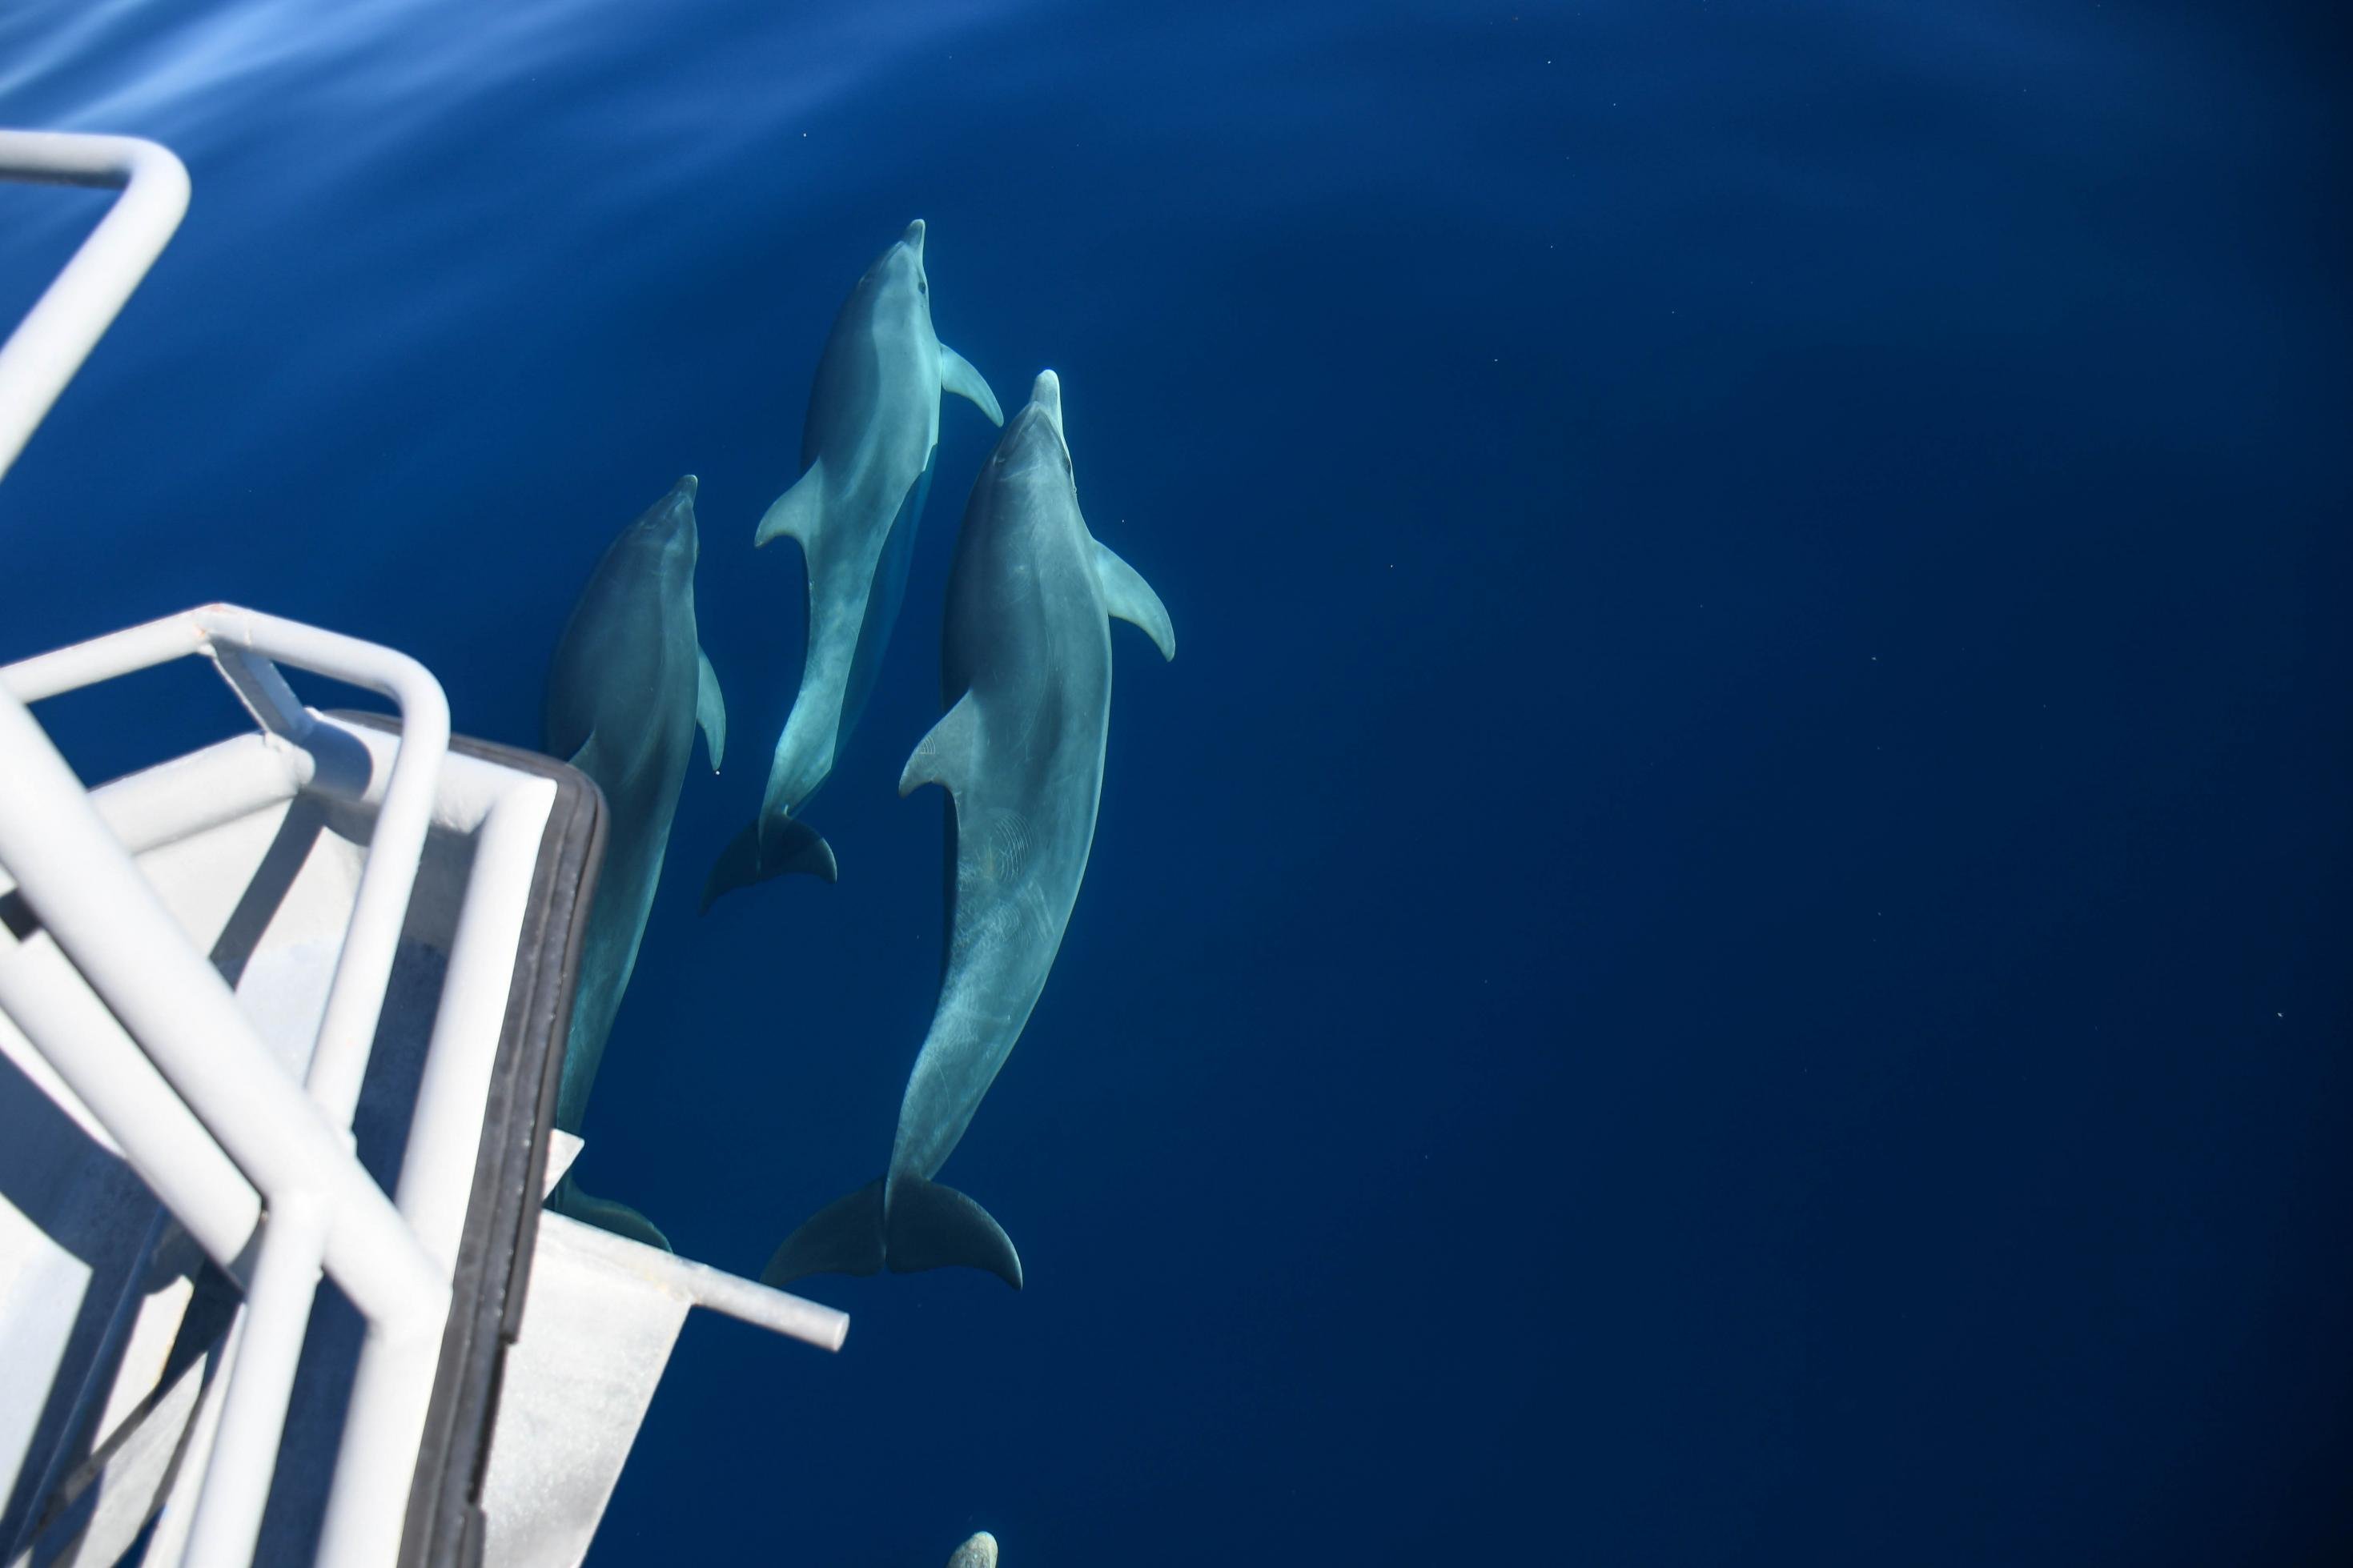 Unter dem Bug eines Schiffes sind drei Delfine im Wasser zu sehen, die dicht beieinander schwimmen